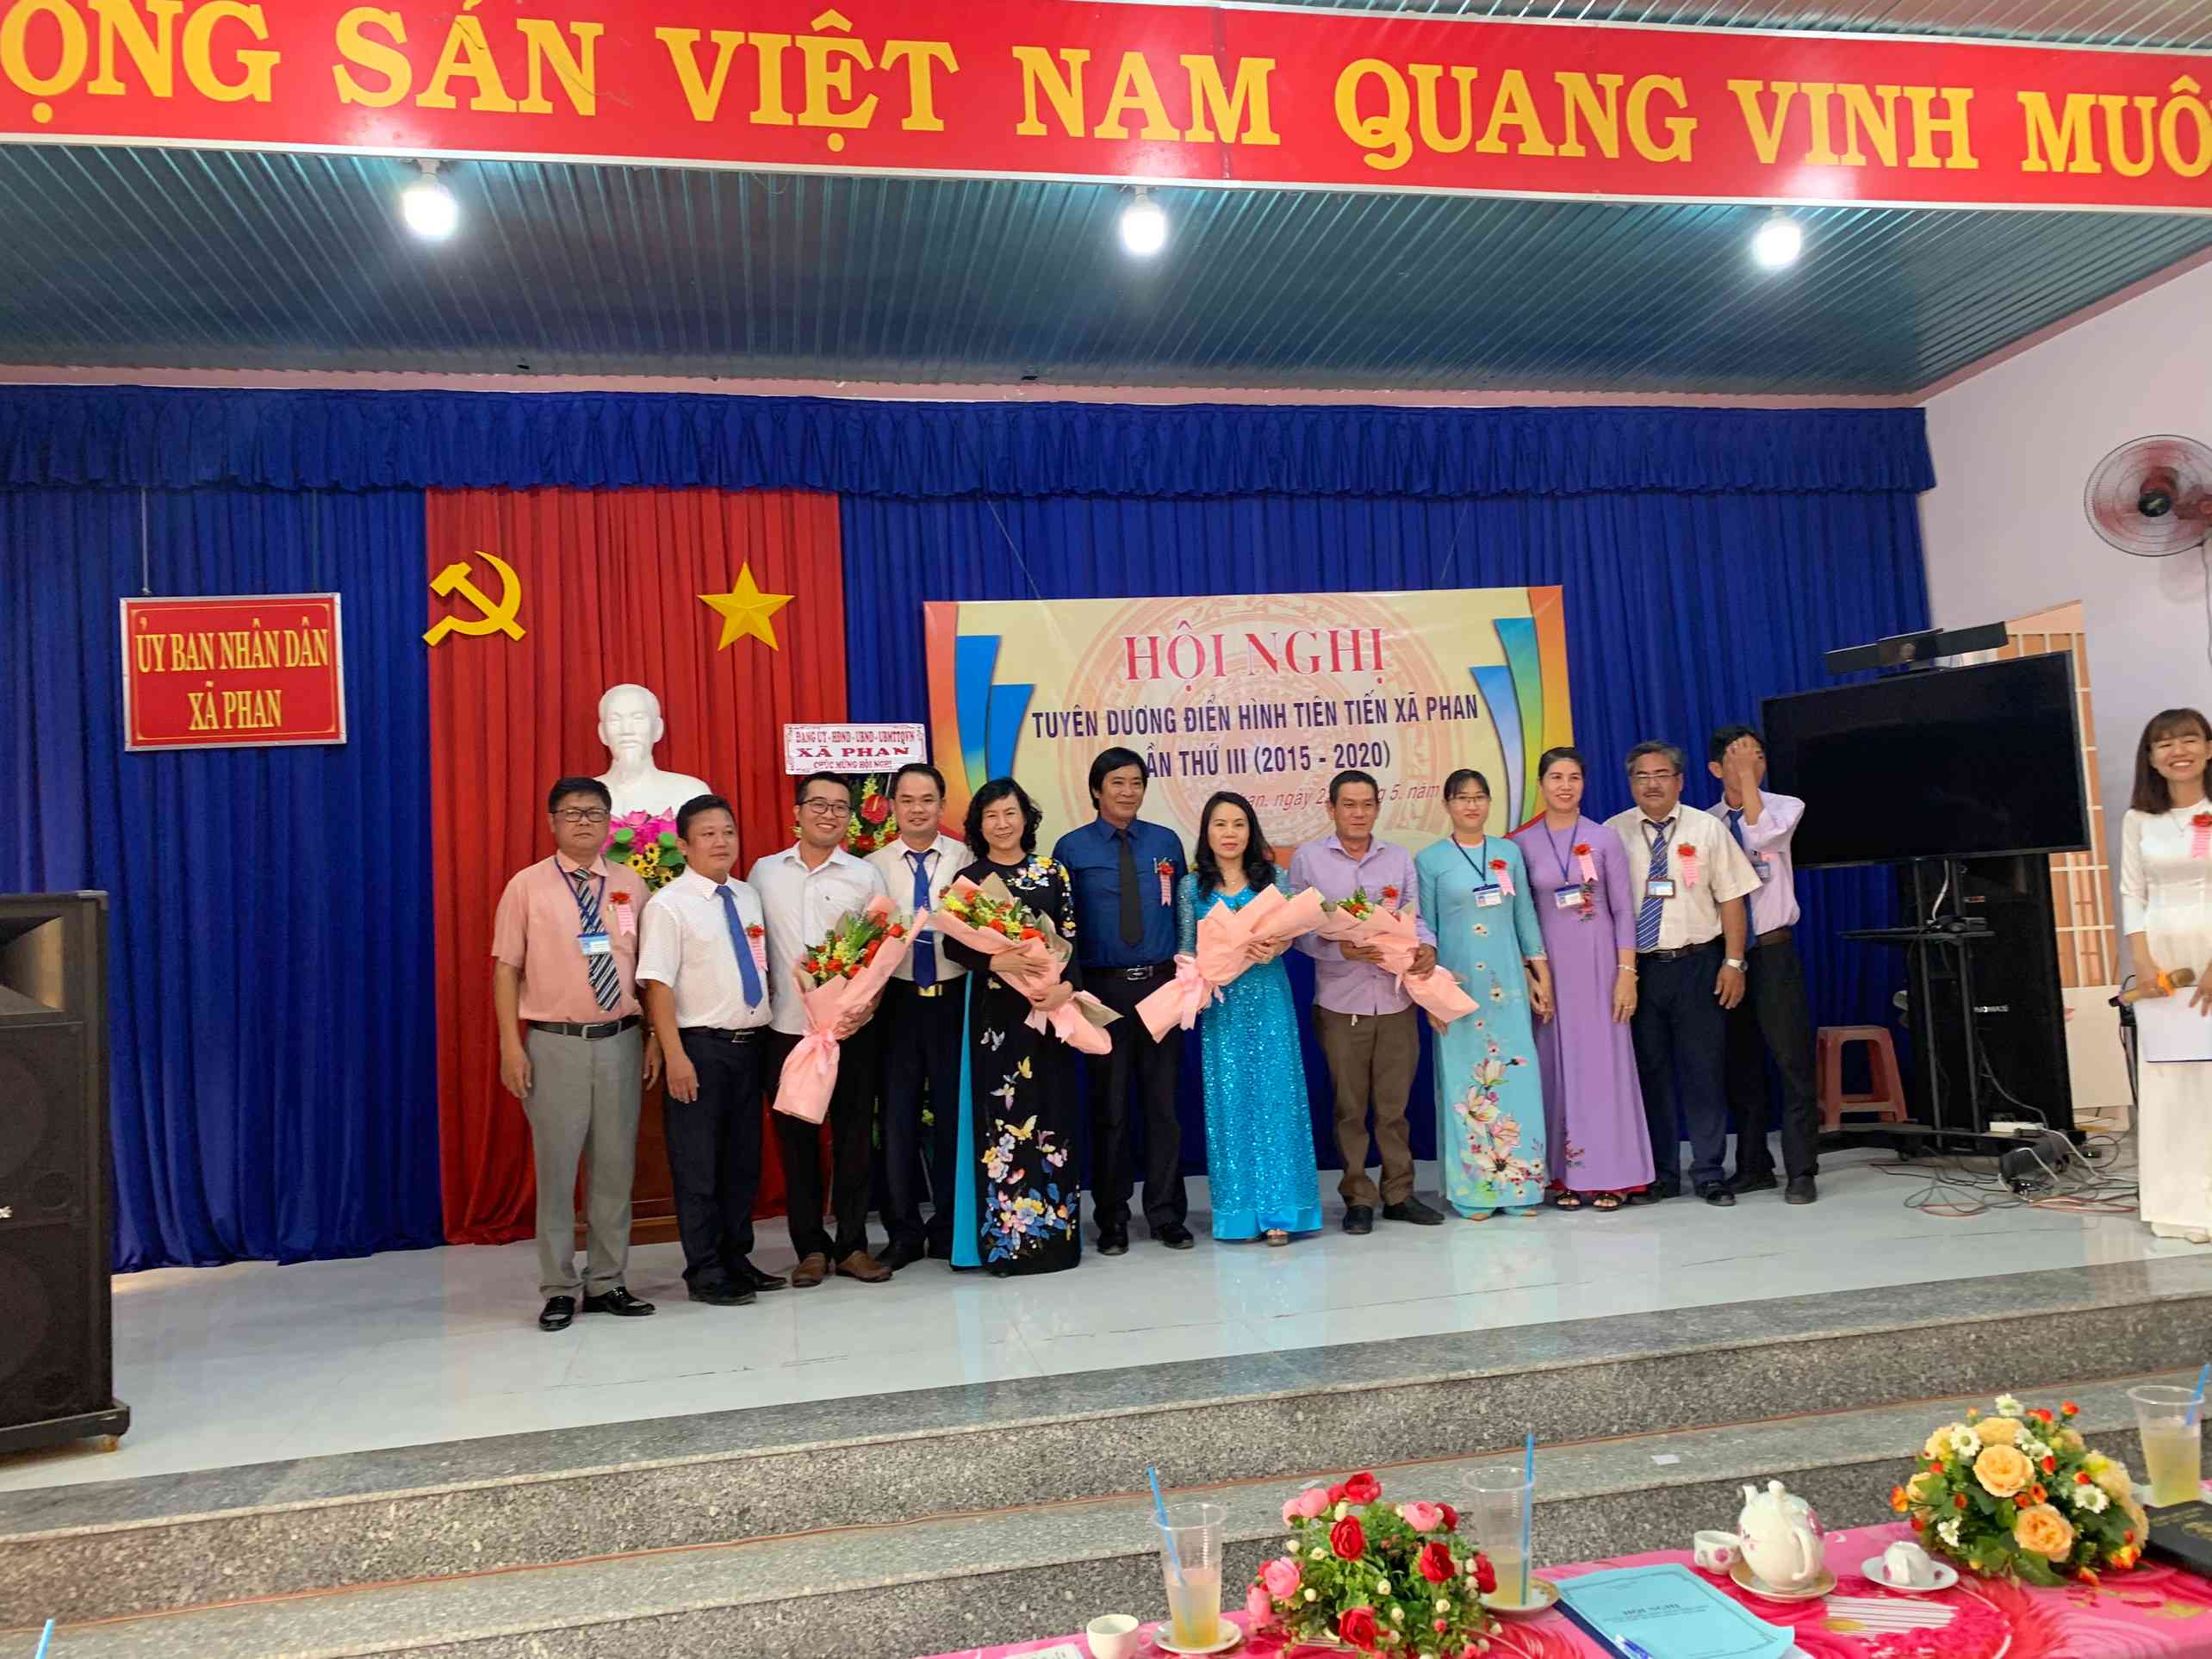 Huyện Dương Minh Châu hoàn thành Hội nghị Điển hình tiên tiến cấp cơ sở giai đoạn 2015-2020